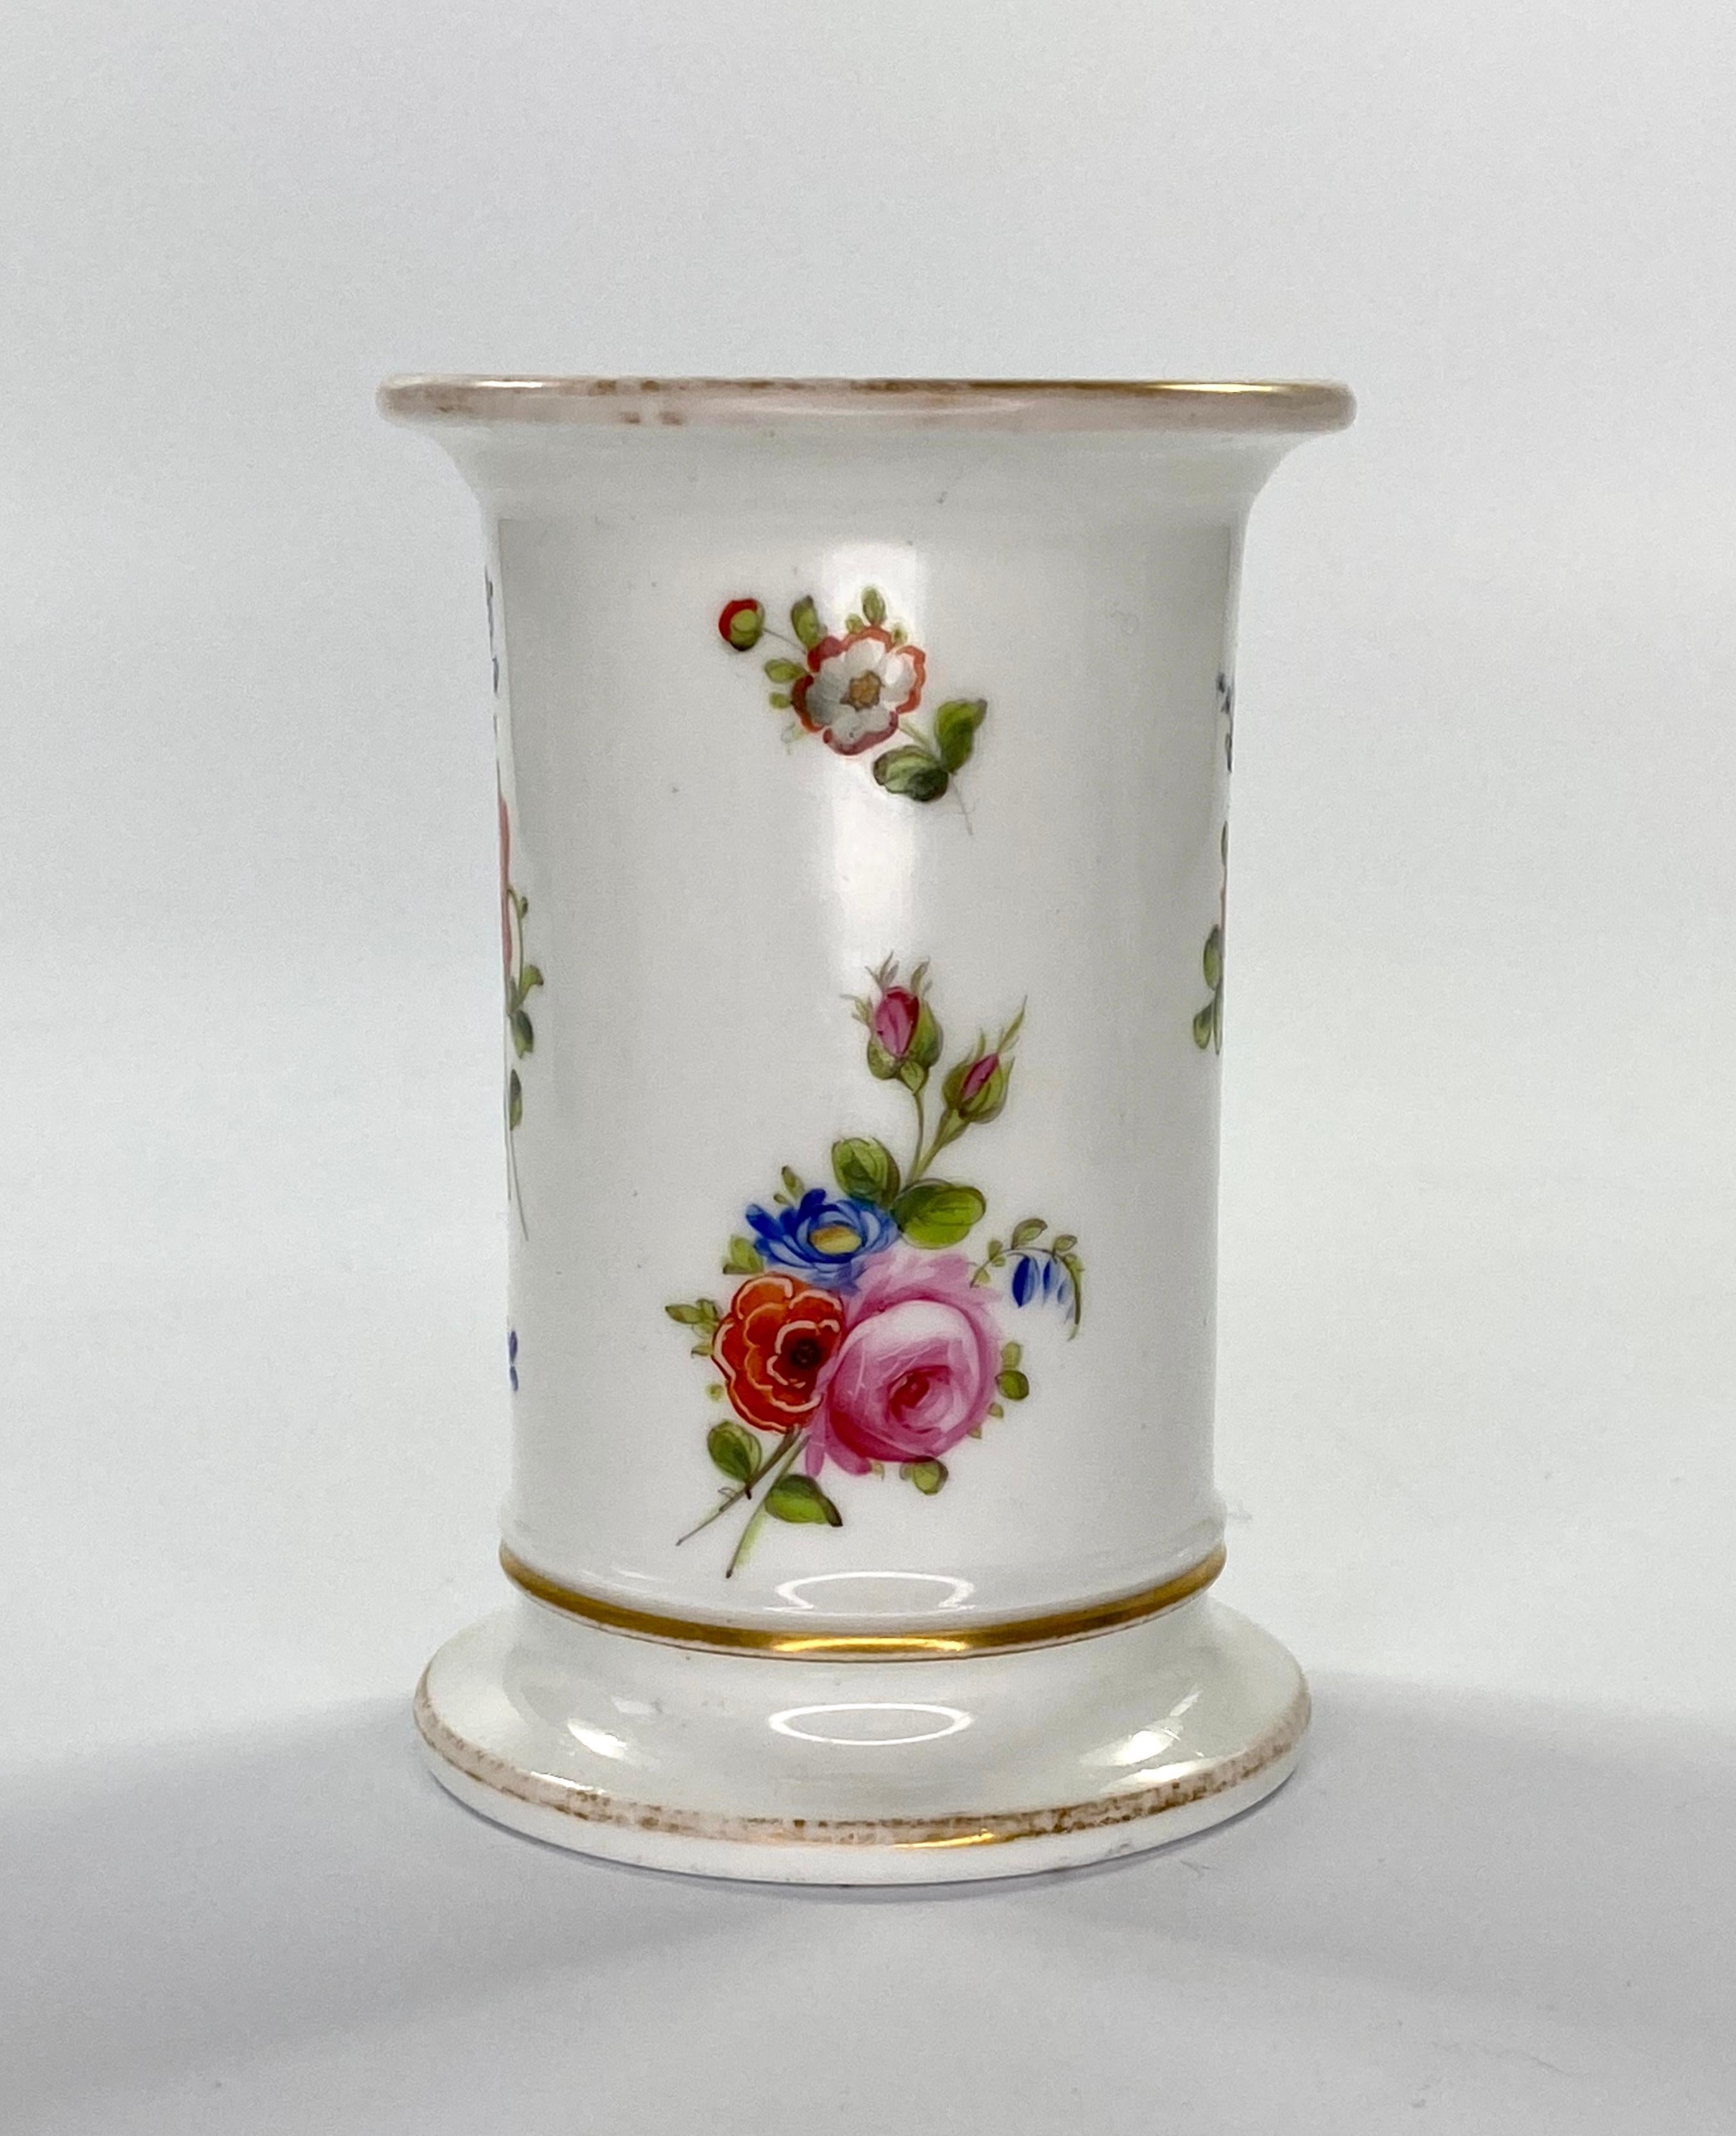 Regency Swansea Porcelain Spill Vase, Flowers, circa 1815